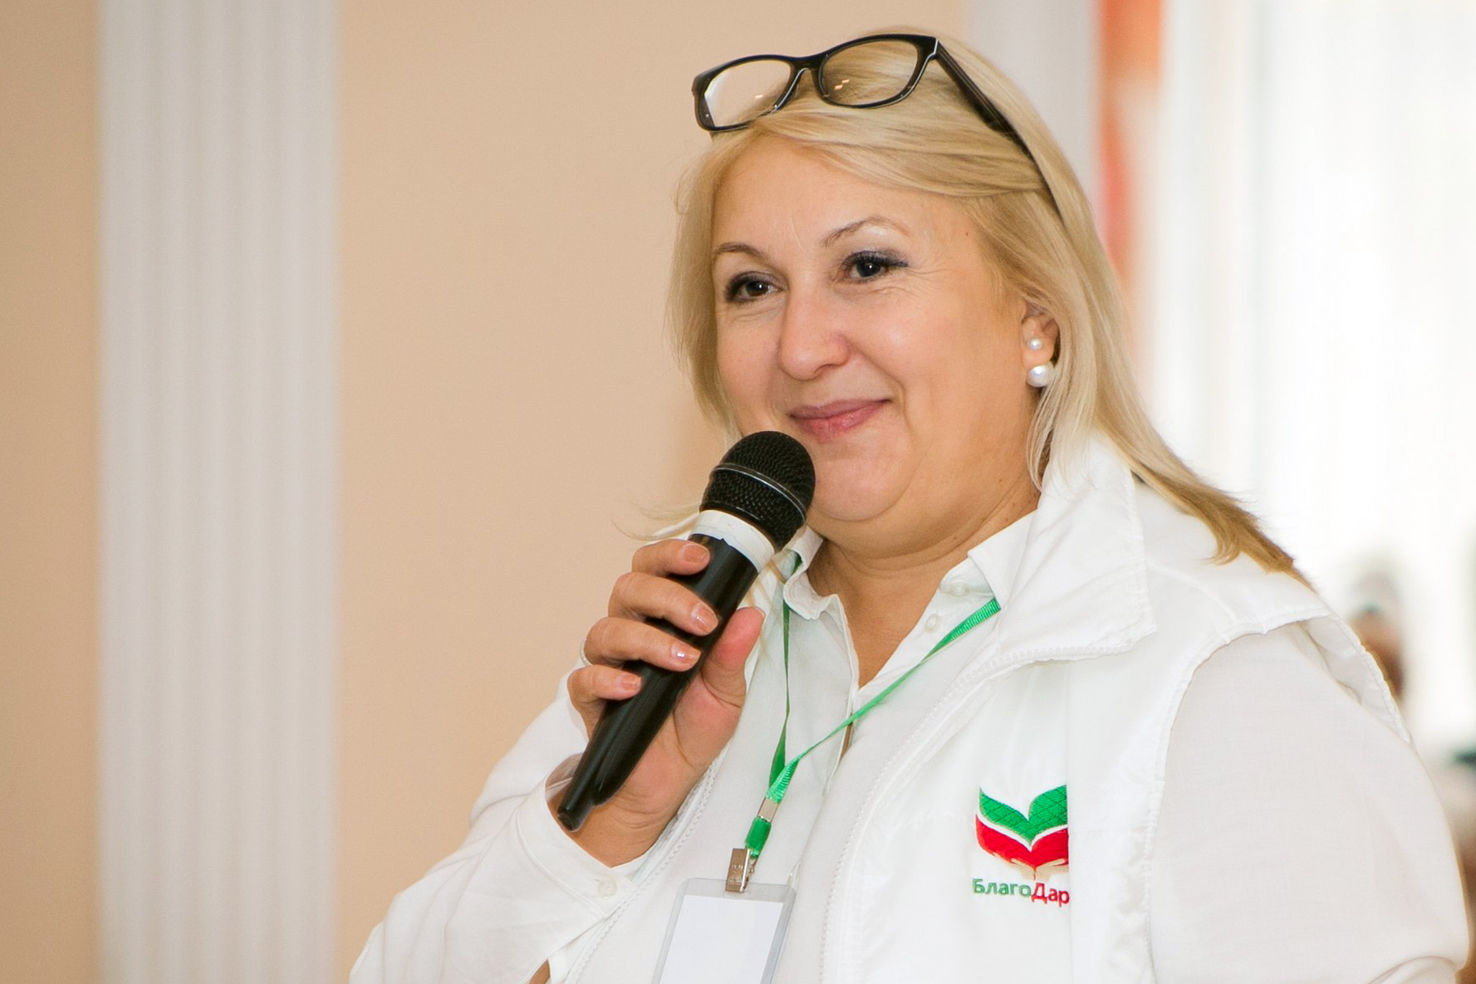 Фонд "БлагоДарение" вдохнул новую жизнь в Топасево